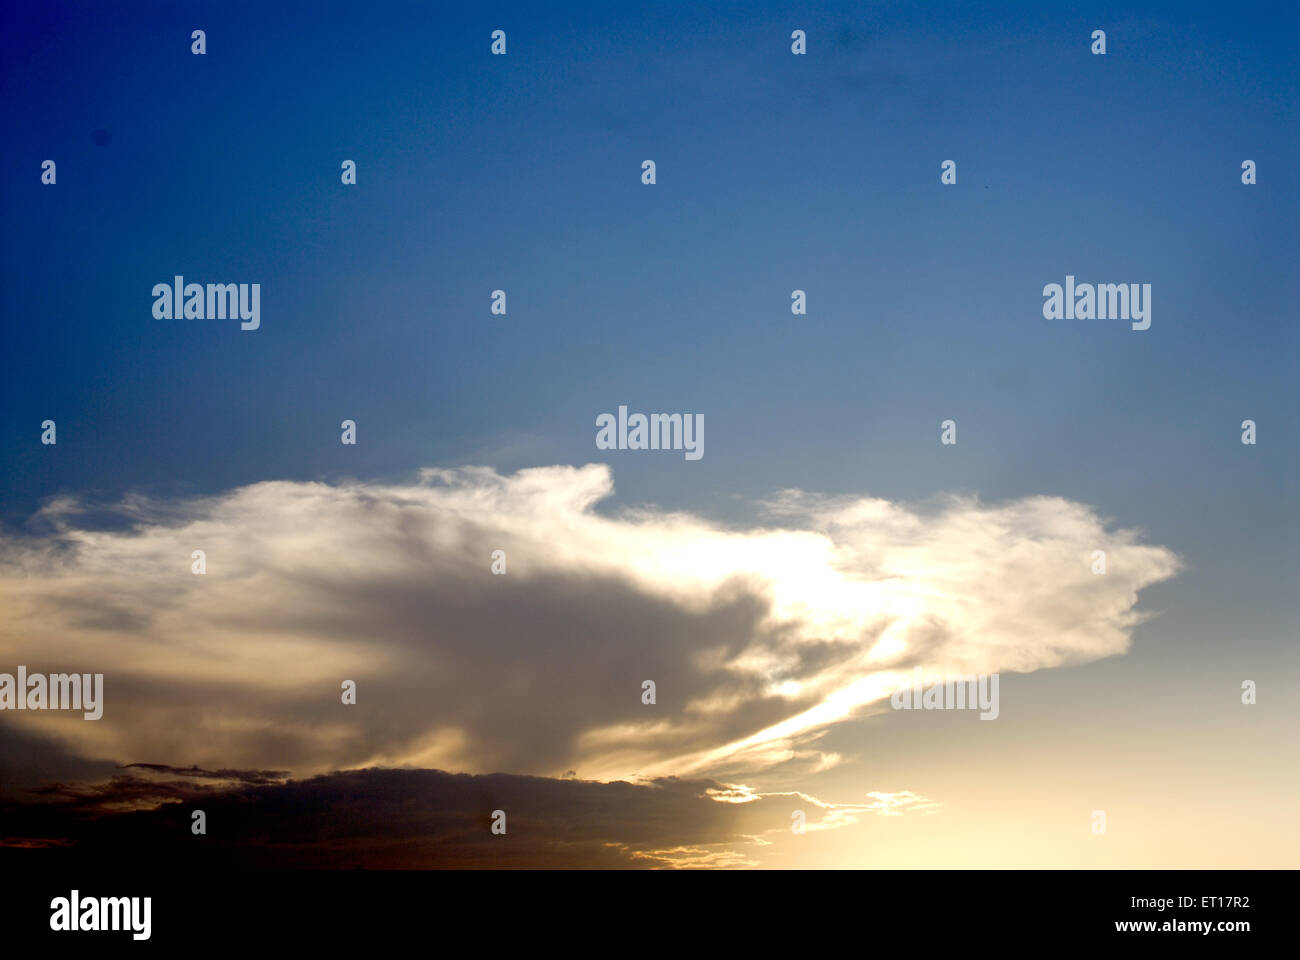 Cielo azul con nubes blancas con forro plateado durante la puesta de sol Foto de stock